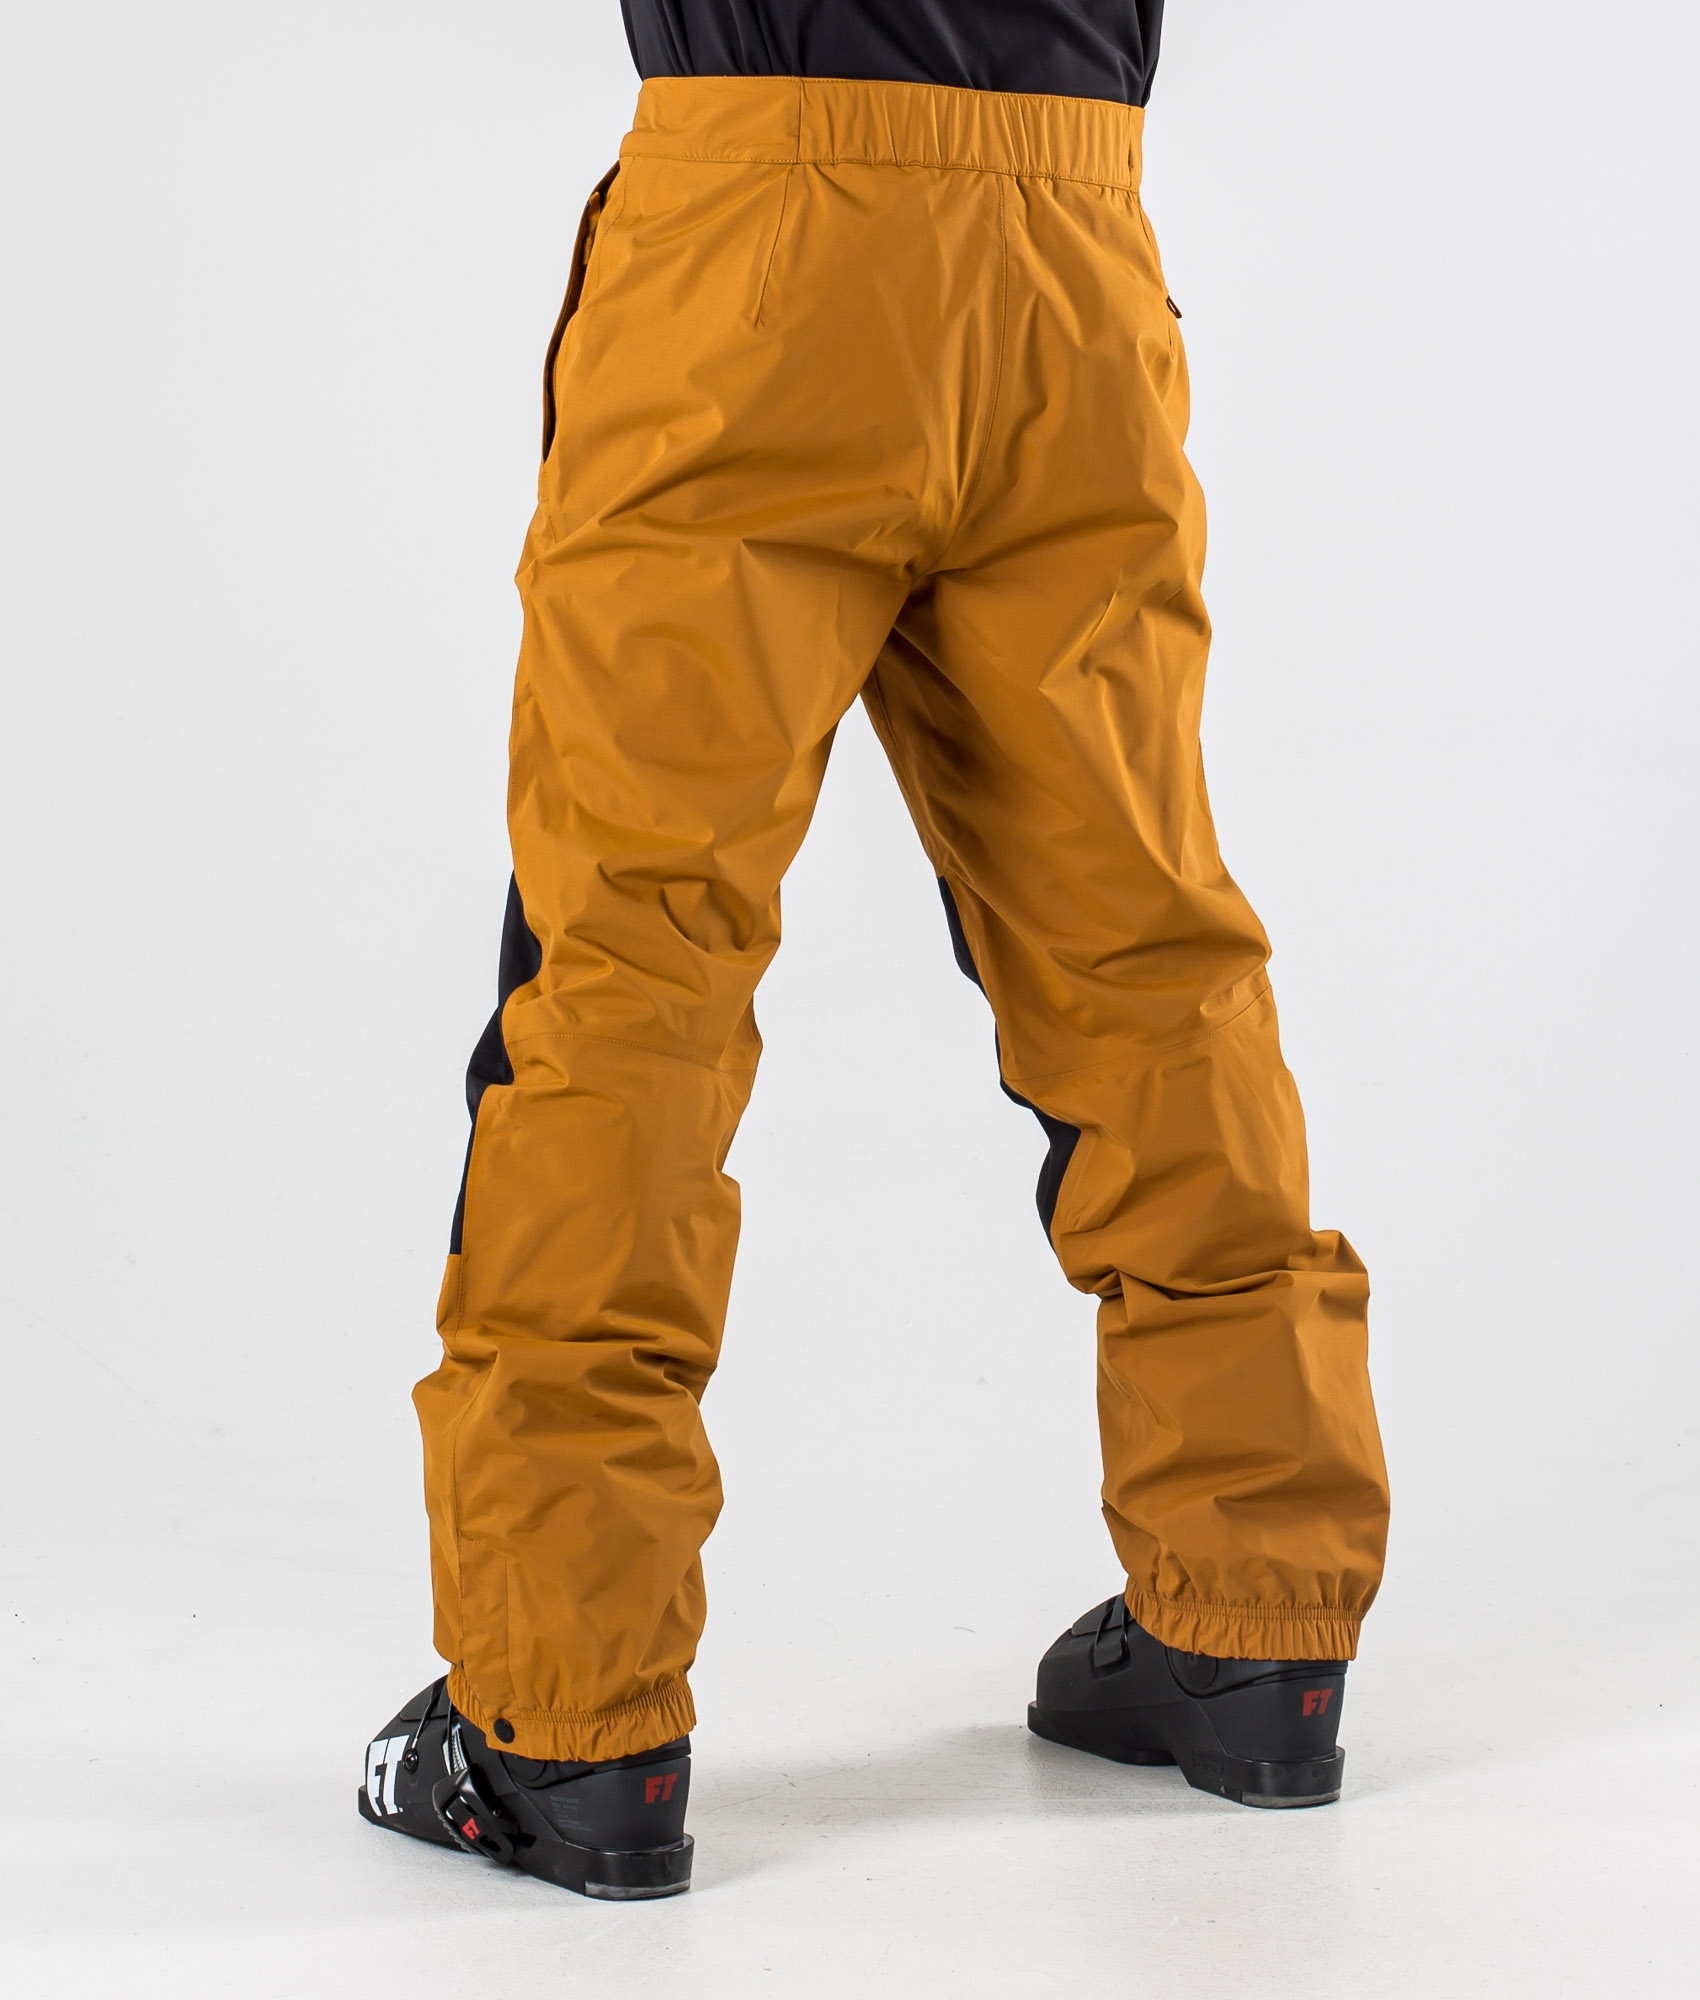 north face yellow ski pants